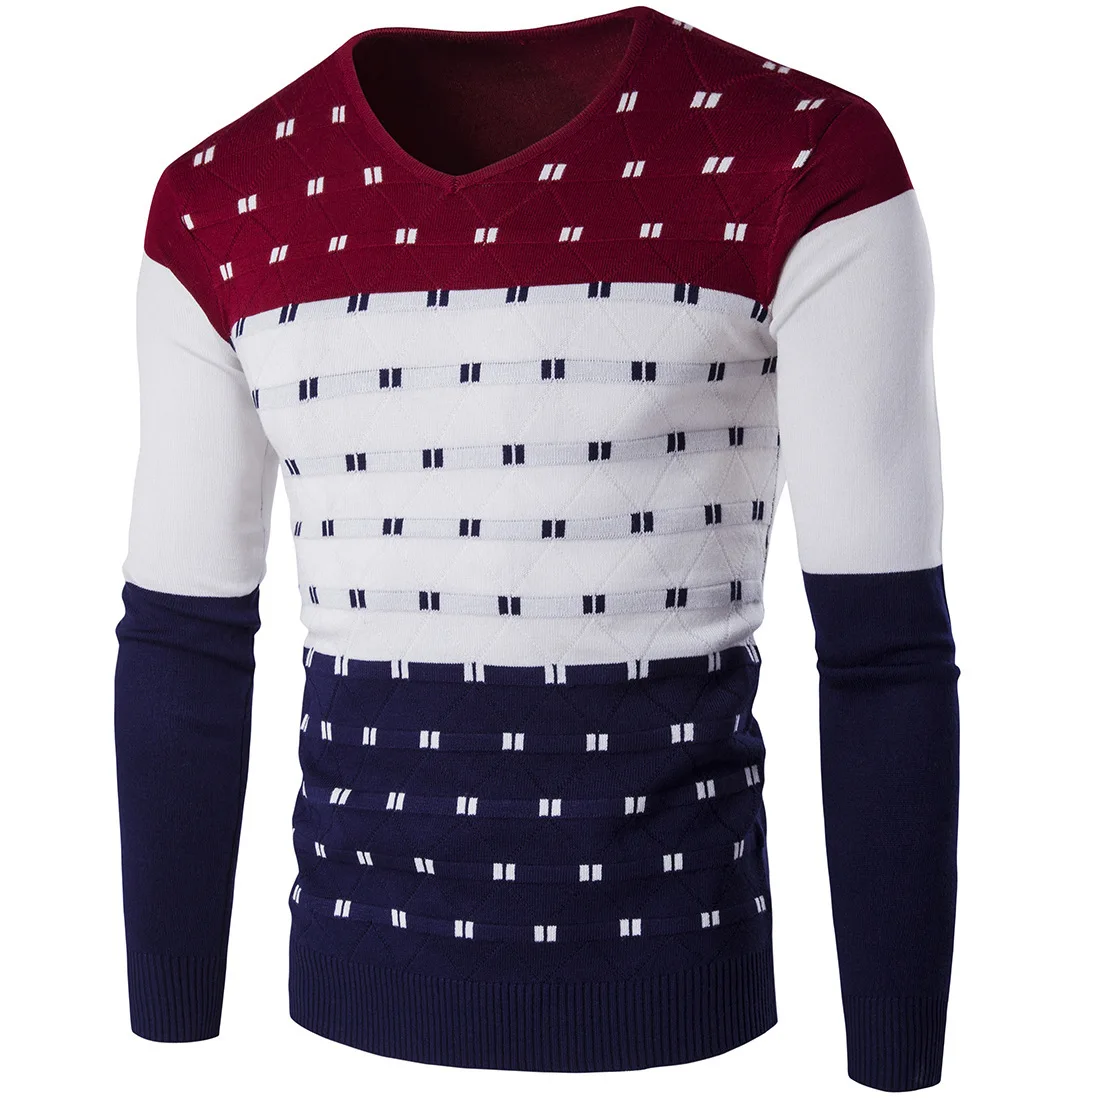 5 цветов, полосатый мужской свитер, теплый, длинный рукав, v-образный вырез, зимняя одежда для мужчин, модный, облегающий, с принтом, пуловер, свитер - Цвет: Red wine